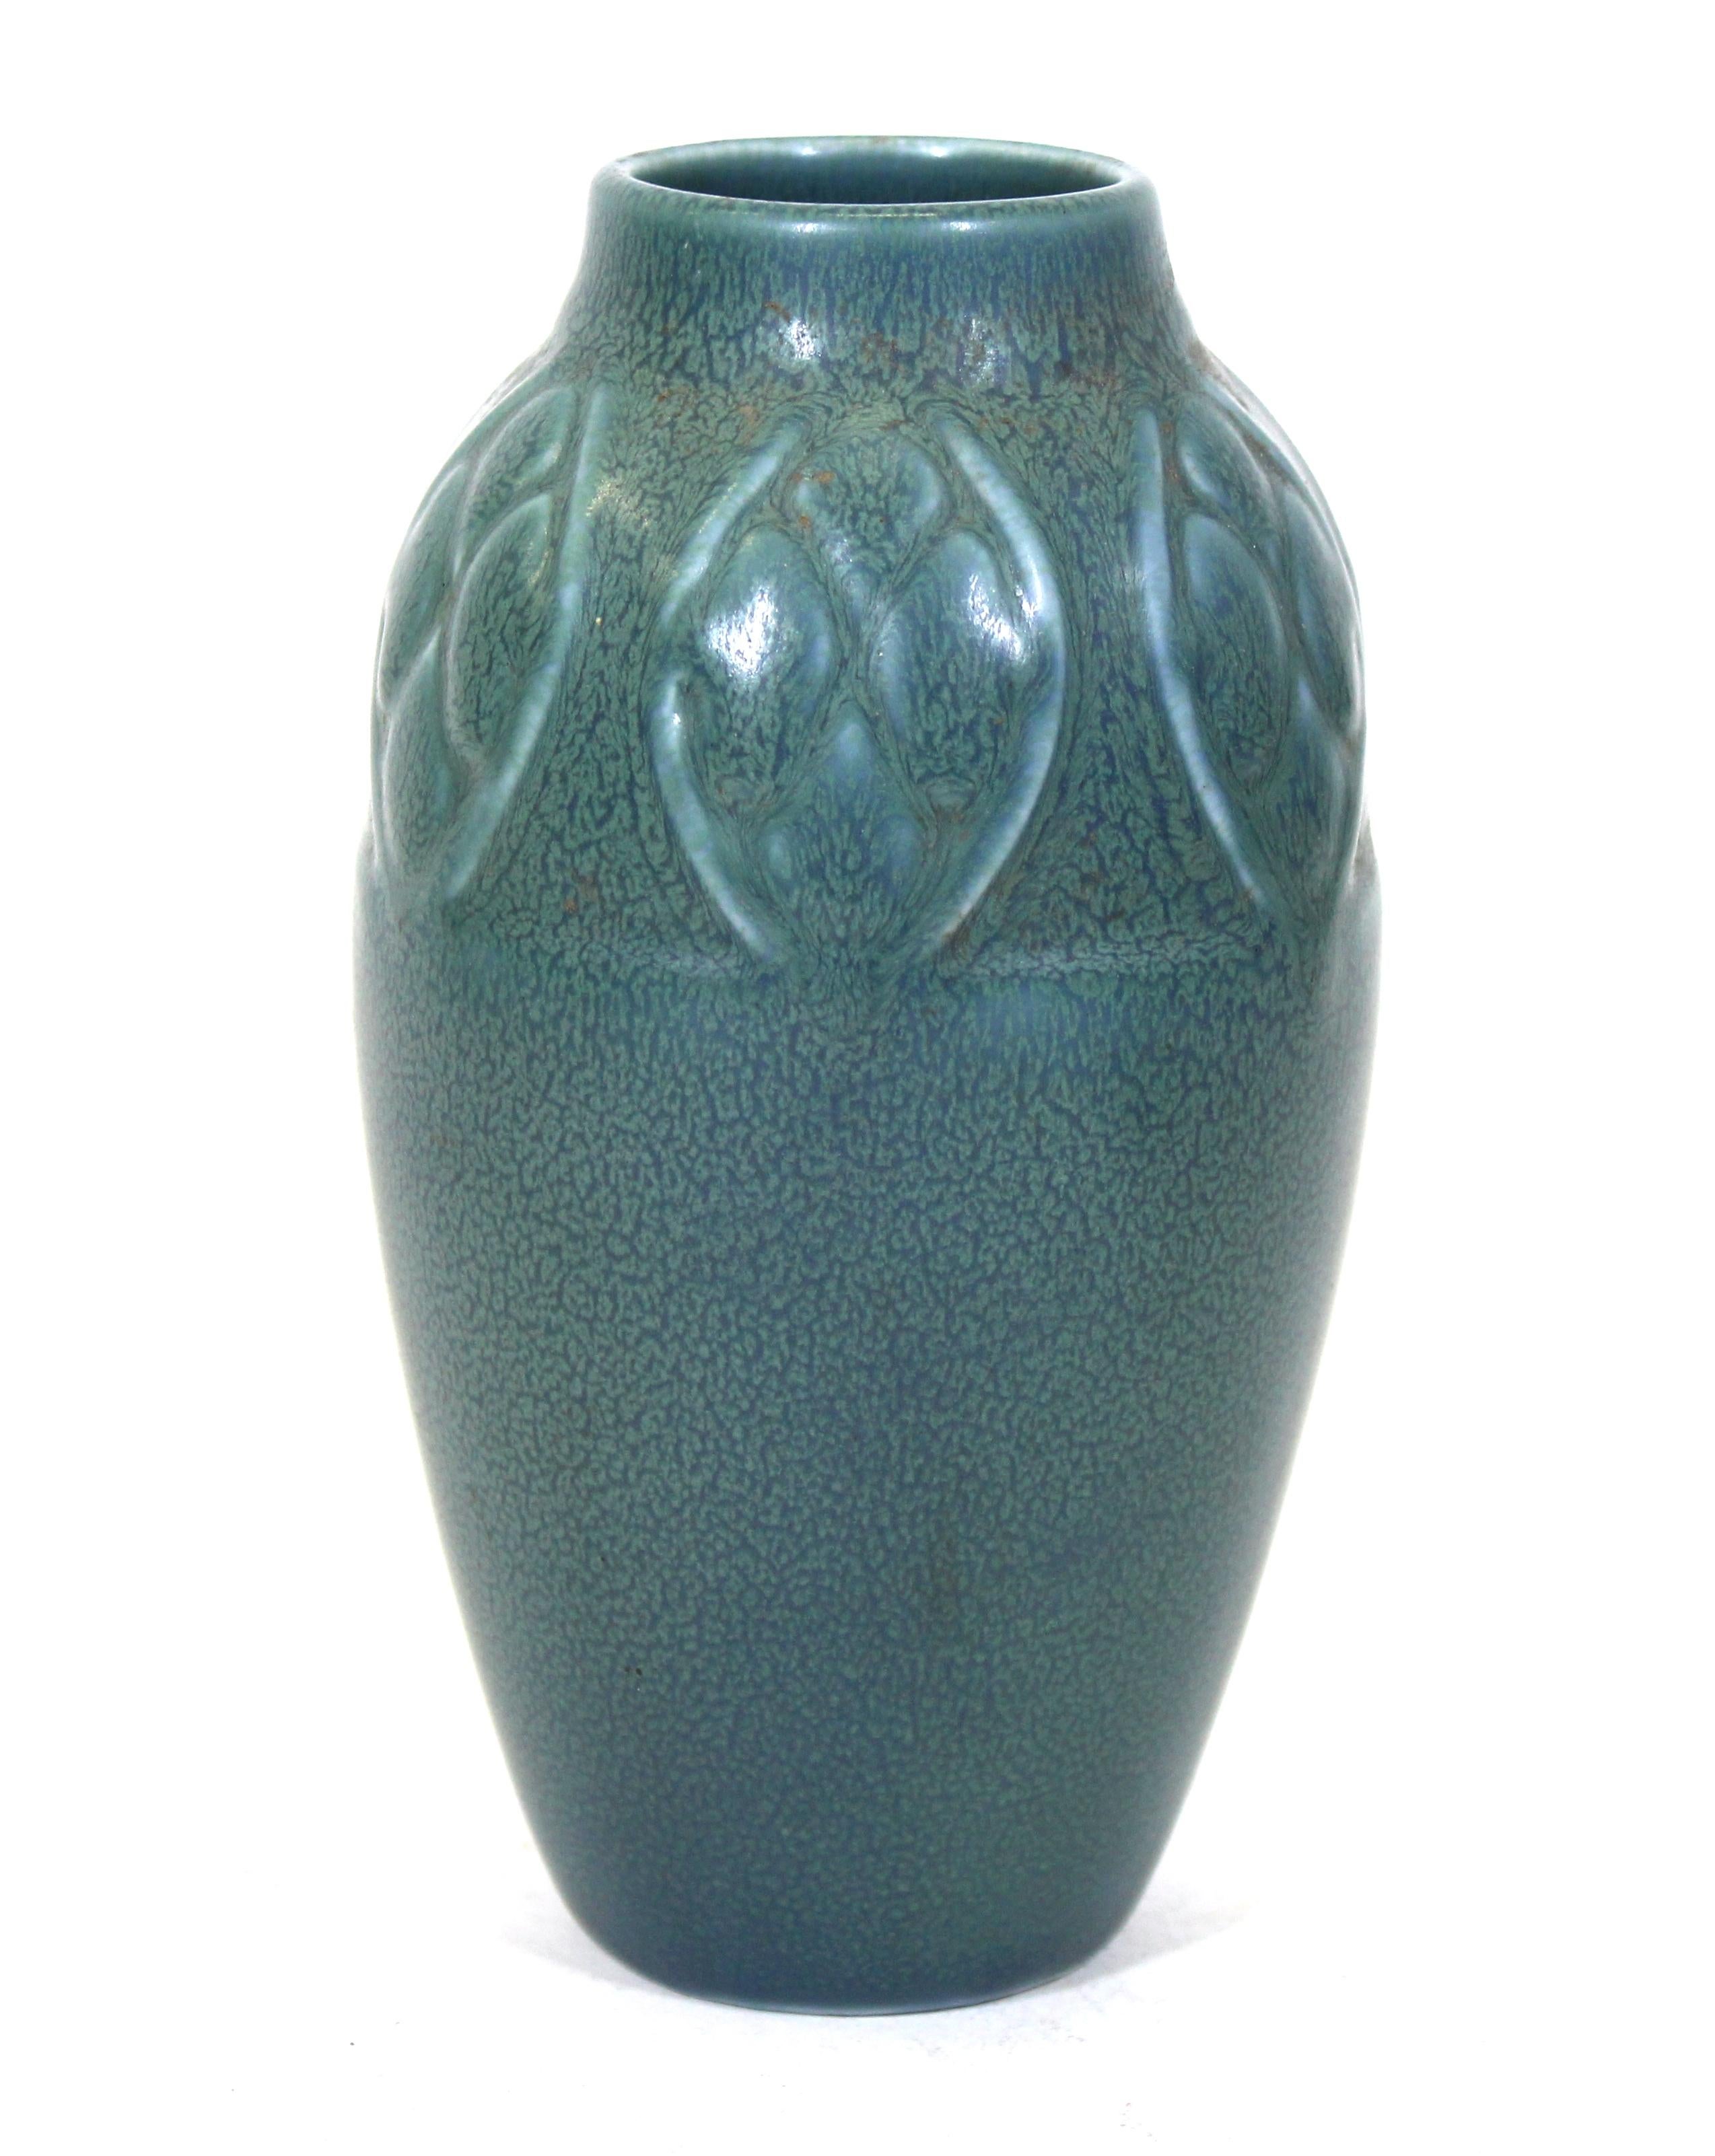 Rookwood pottery ceramic vase #2401, 1927. Maker's mark on the bottom.